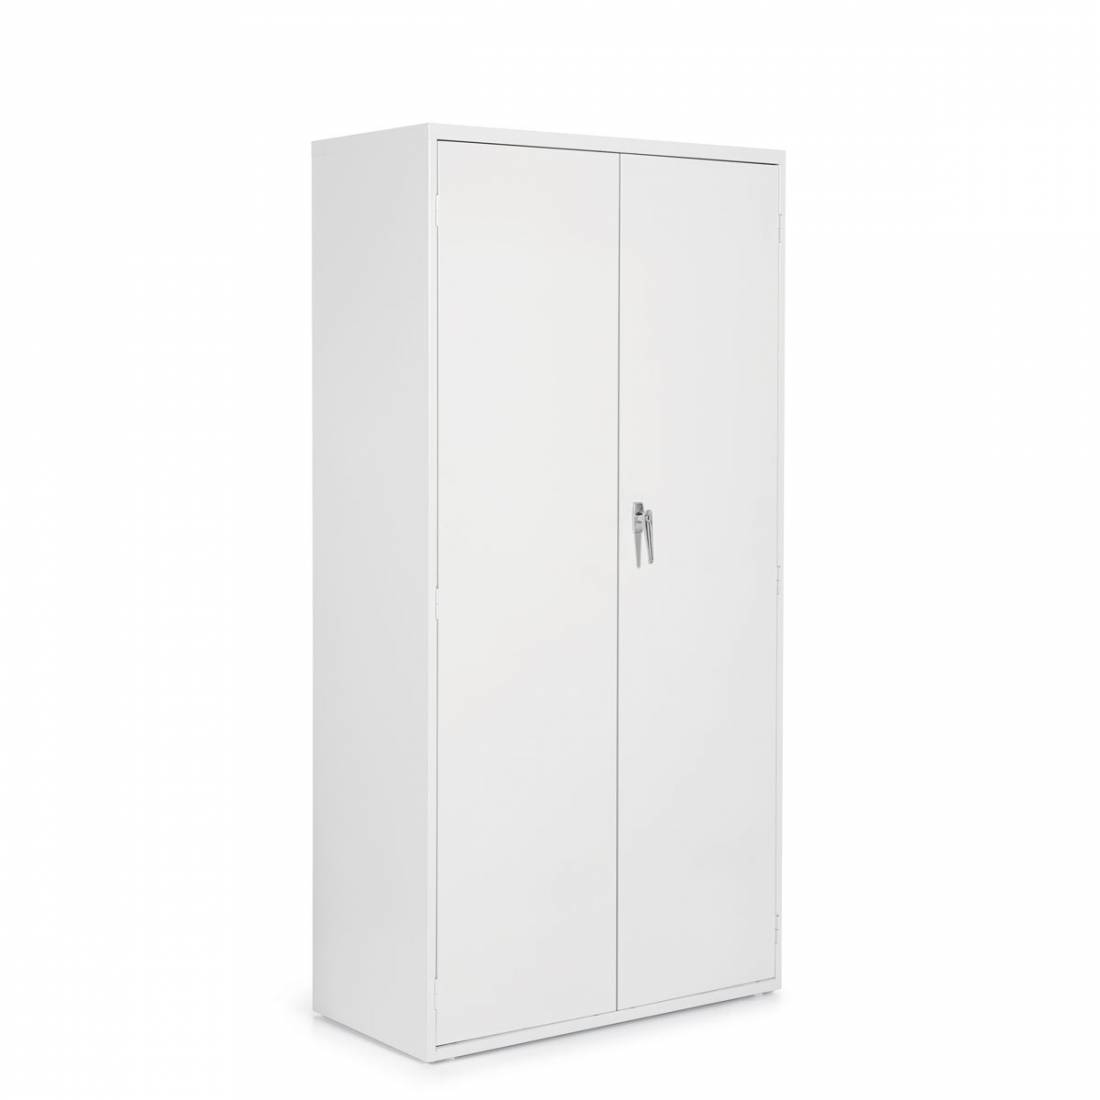 2 Door Storage Cabinet - One Fixed Shelf, Three Adjustable Shelves